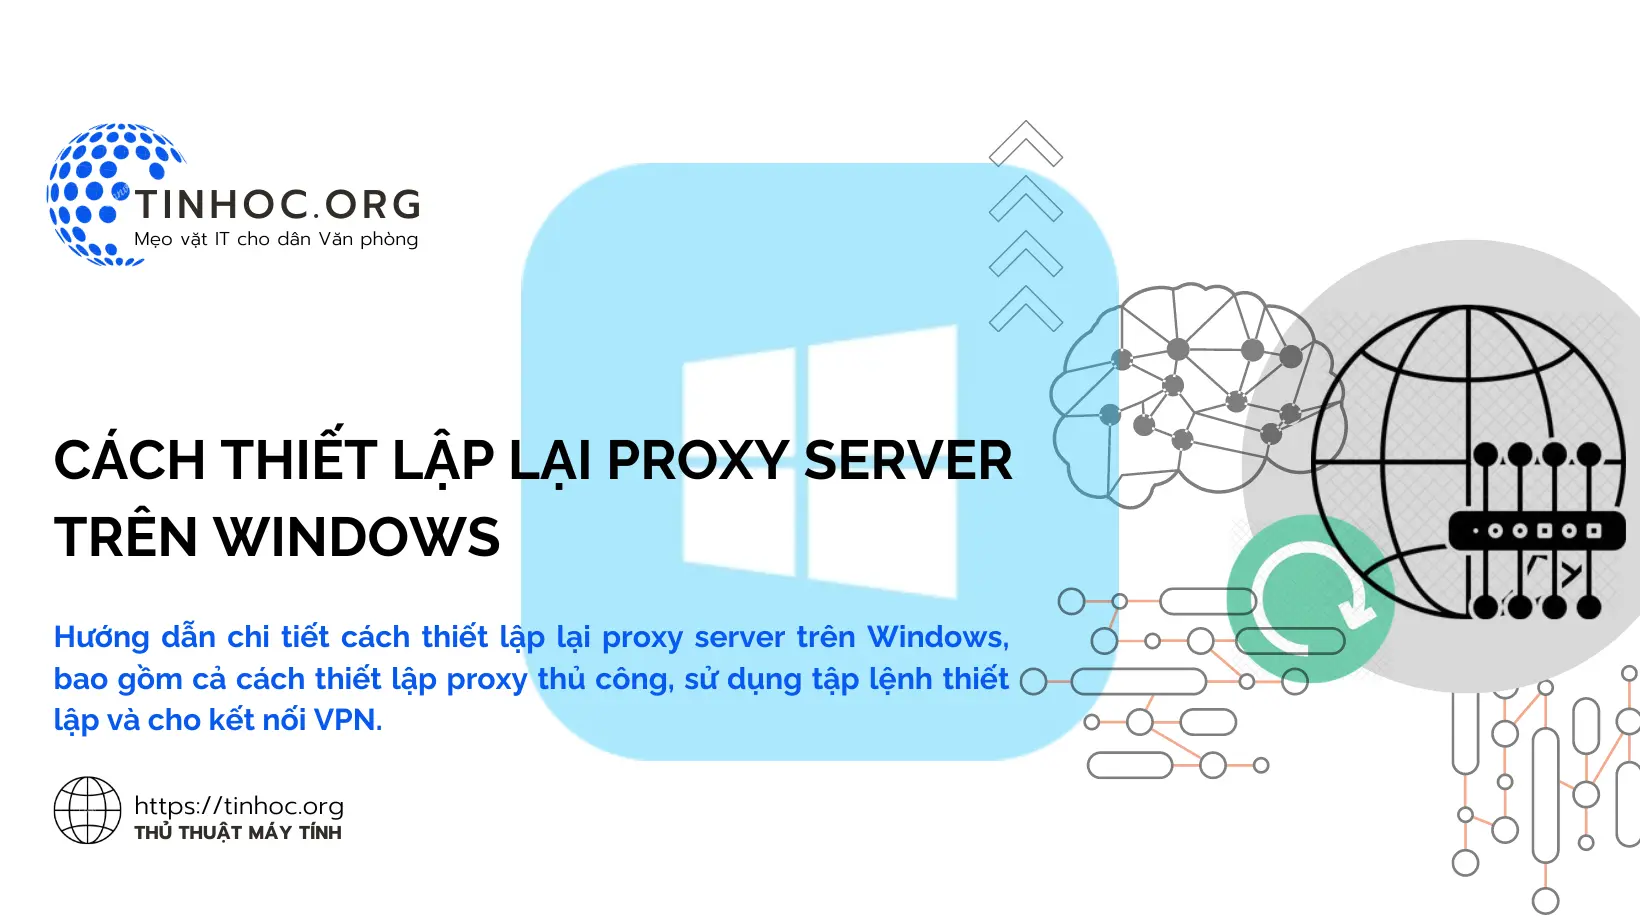 Hướng dẫn chi tiết cách thiết lập lại proxy server trên Windows, bao gồm cả cách thiết lập proxy thủ công, sử dụng tập lệnh thiết lập và cho kết nối VPN.